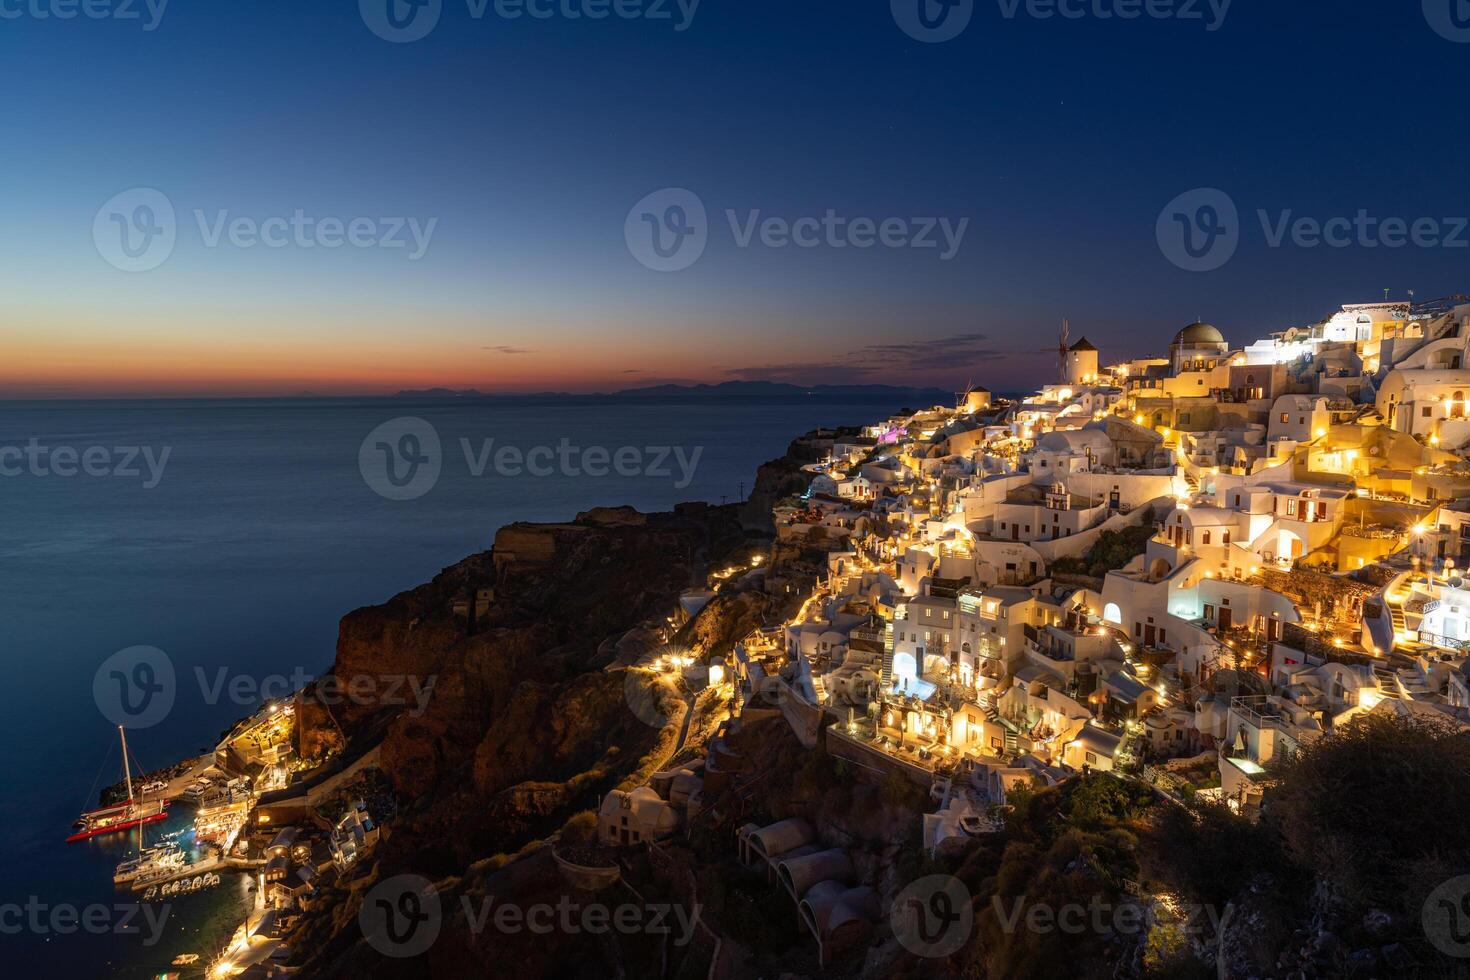 tolle Abend Aussicht von Santorini Insel. malerisch Frühling Sonnenuntergang auf das berühmt oia Dorf, Griechenland, Europa. Reisen Konzept Hintergrund. künstlerisch inspirierend Sonnenuntergang Landschaft, Traum Ferien foto